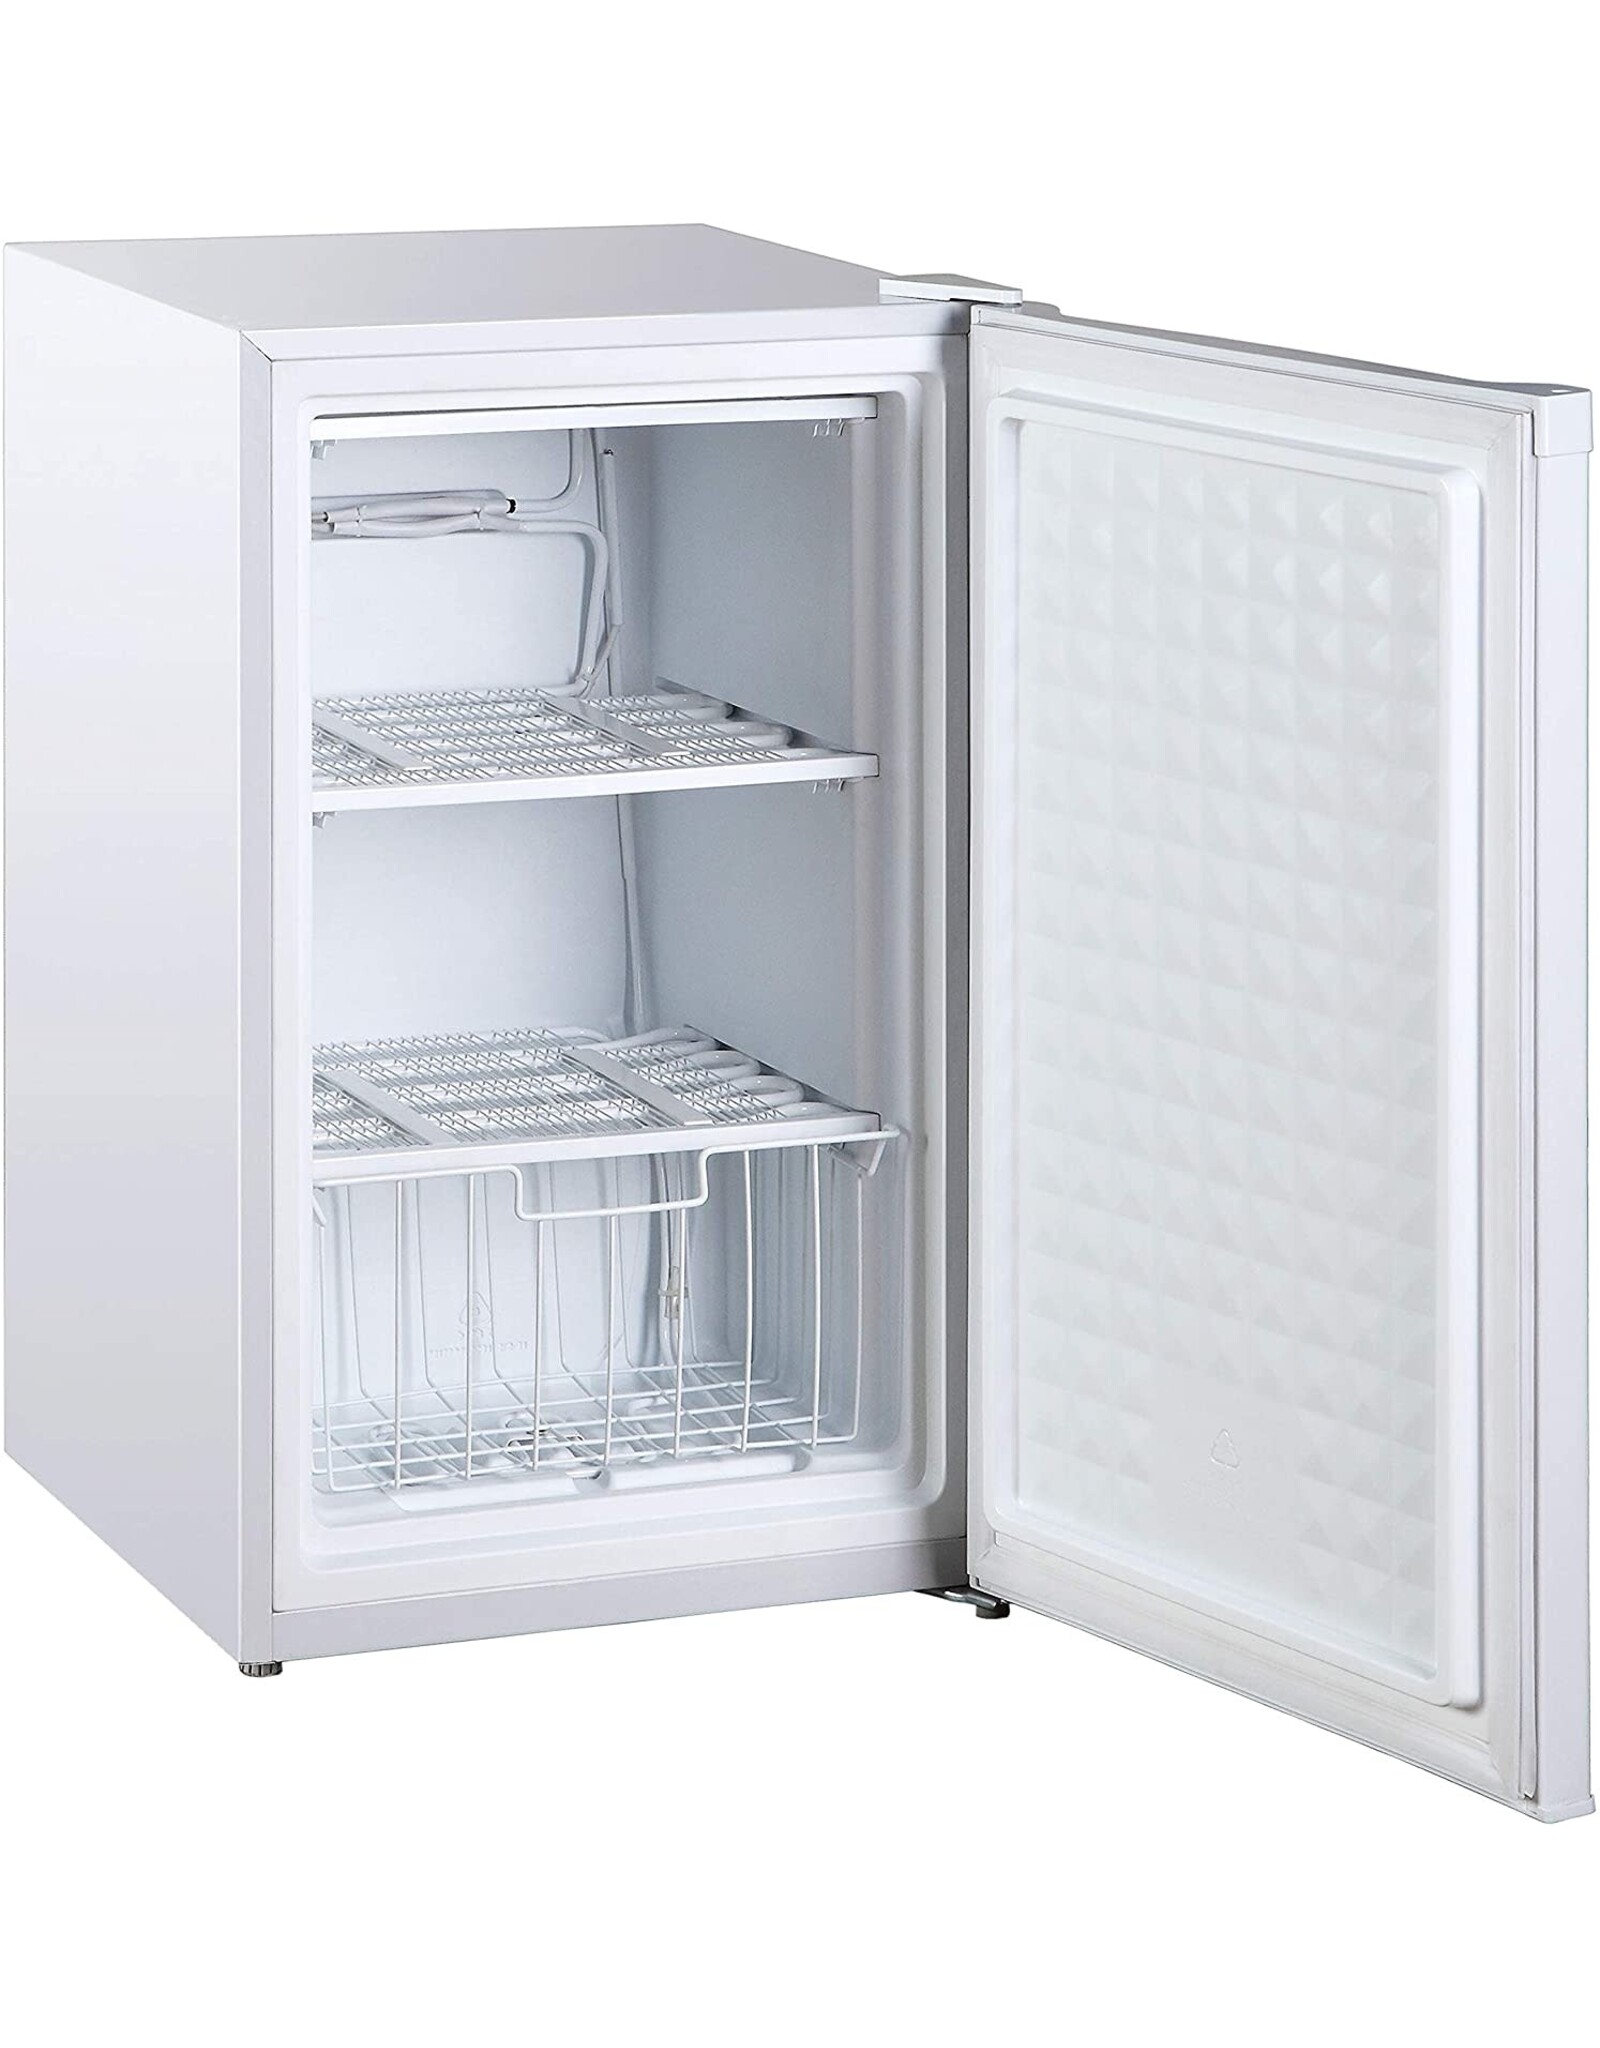 Compagnon de refroidissement compact : Congélateur coffre Midea WHS-109FW1 pour espaces limités